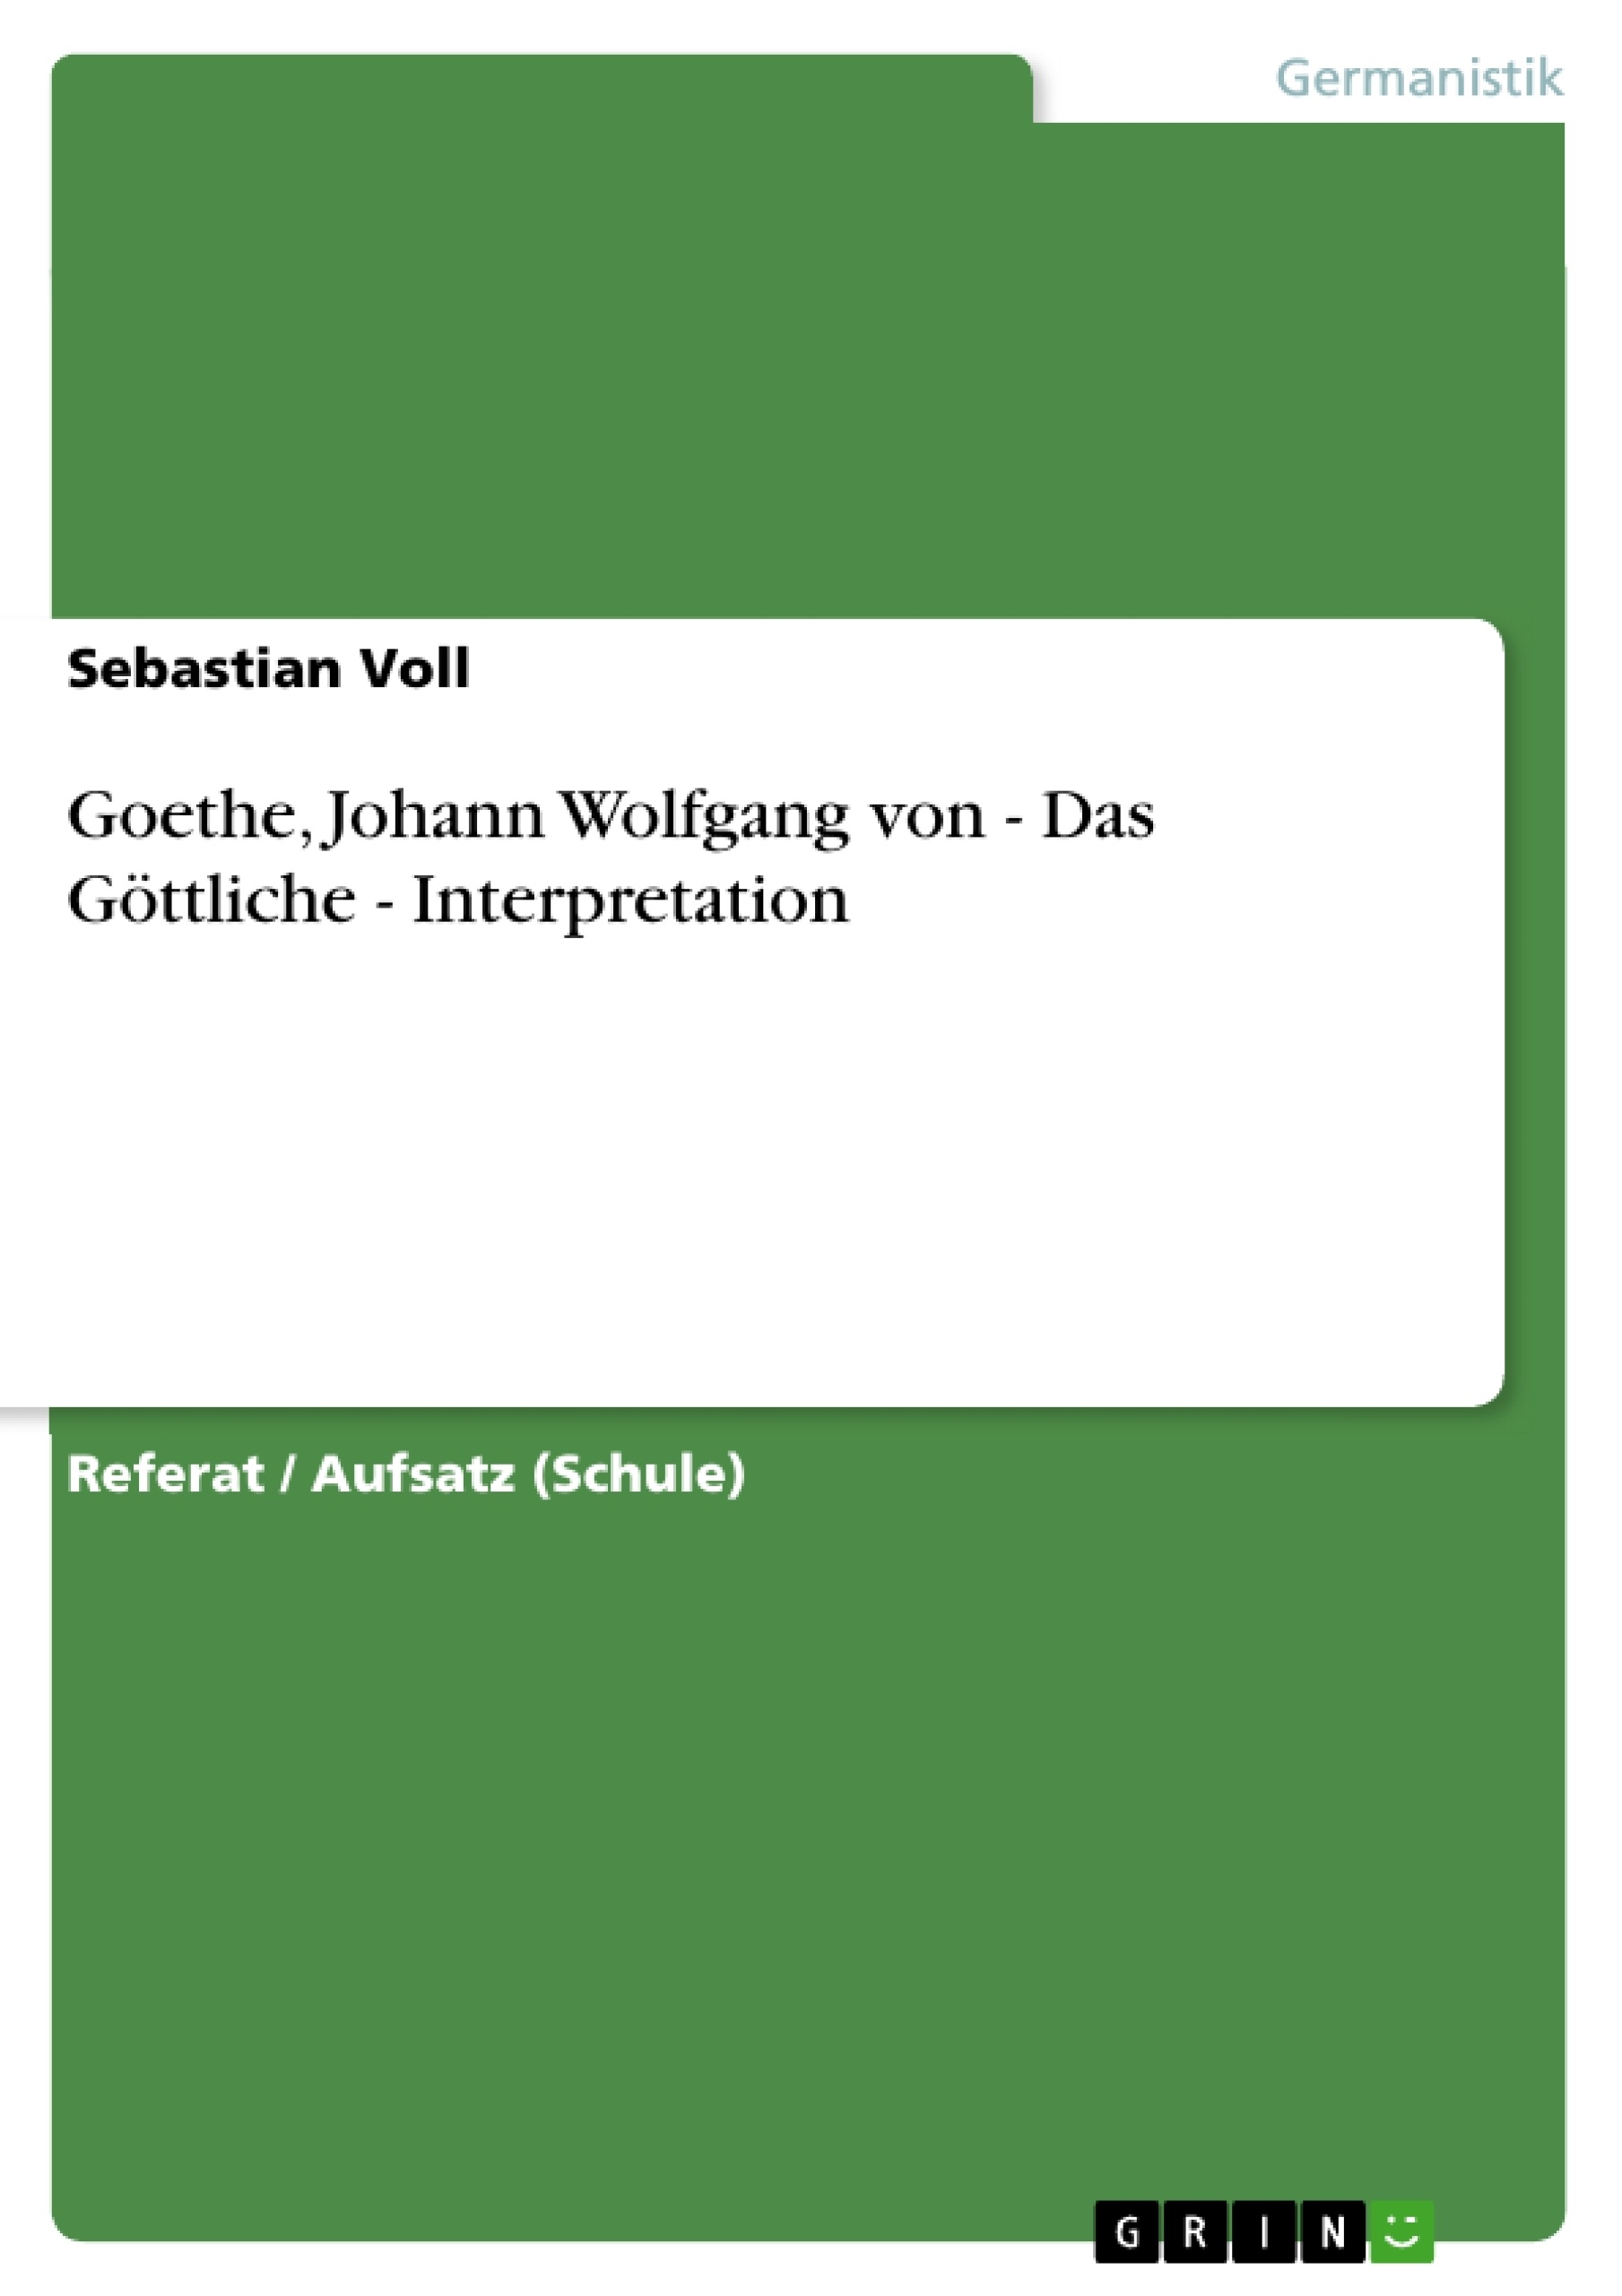 Title: Goethe, Johann Wolfgang von - Das Göttliche - Interpretation